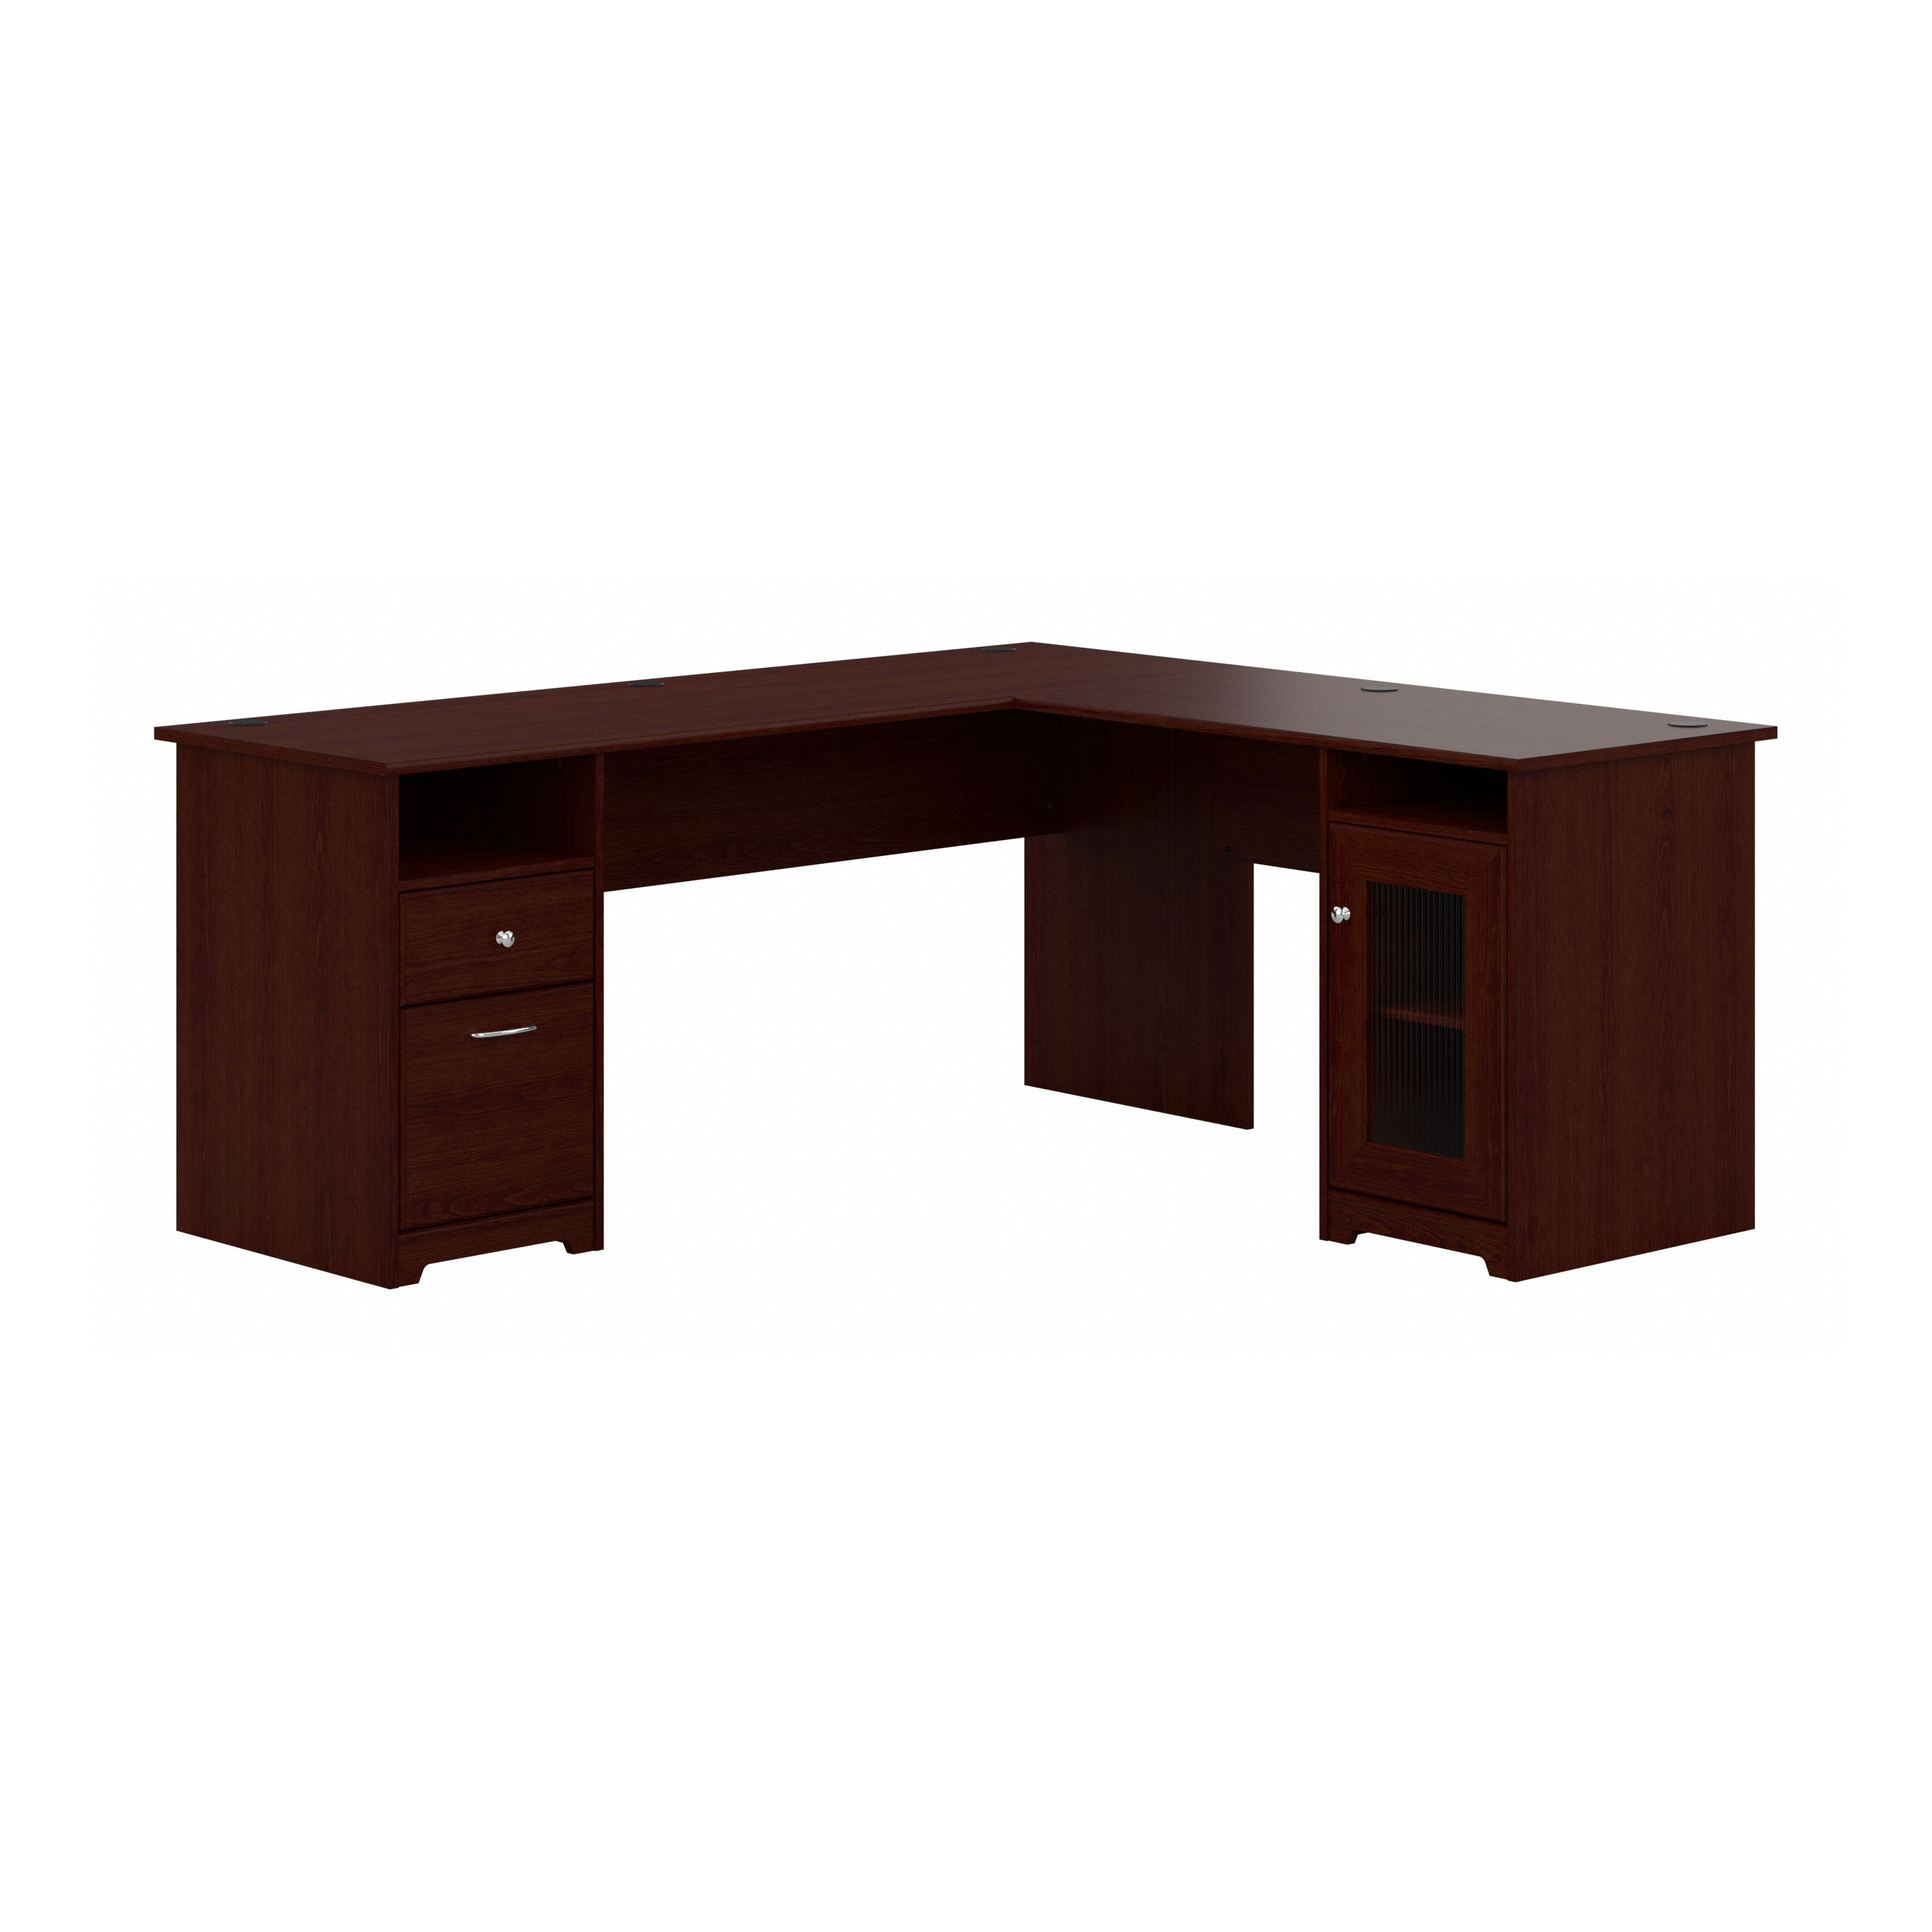 Shop Bush Furniture Cabot 72W L Shaped Computer Desk with Storage 02 CAB072HVC #color_harvest cherry